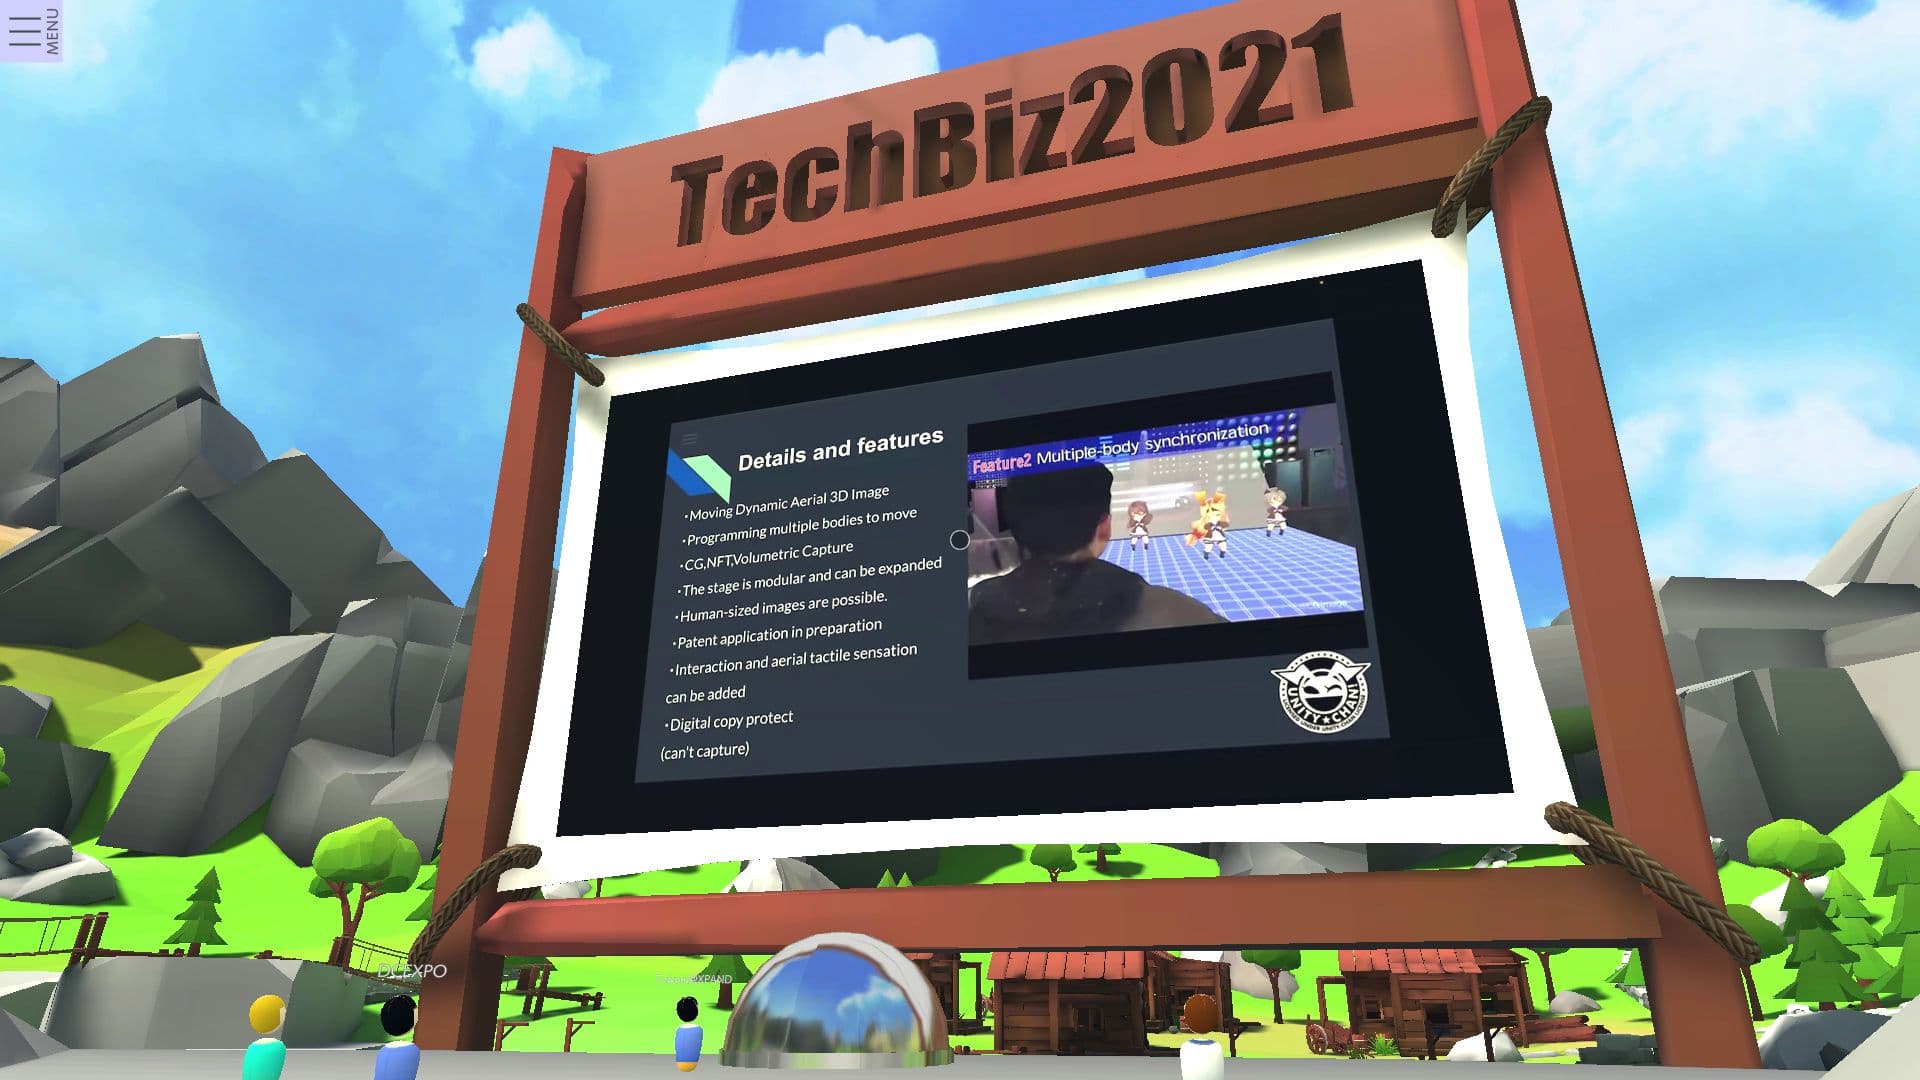 TechBiz2021